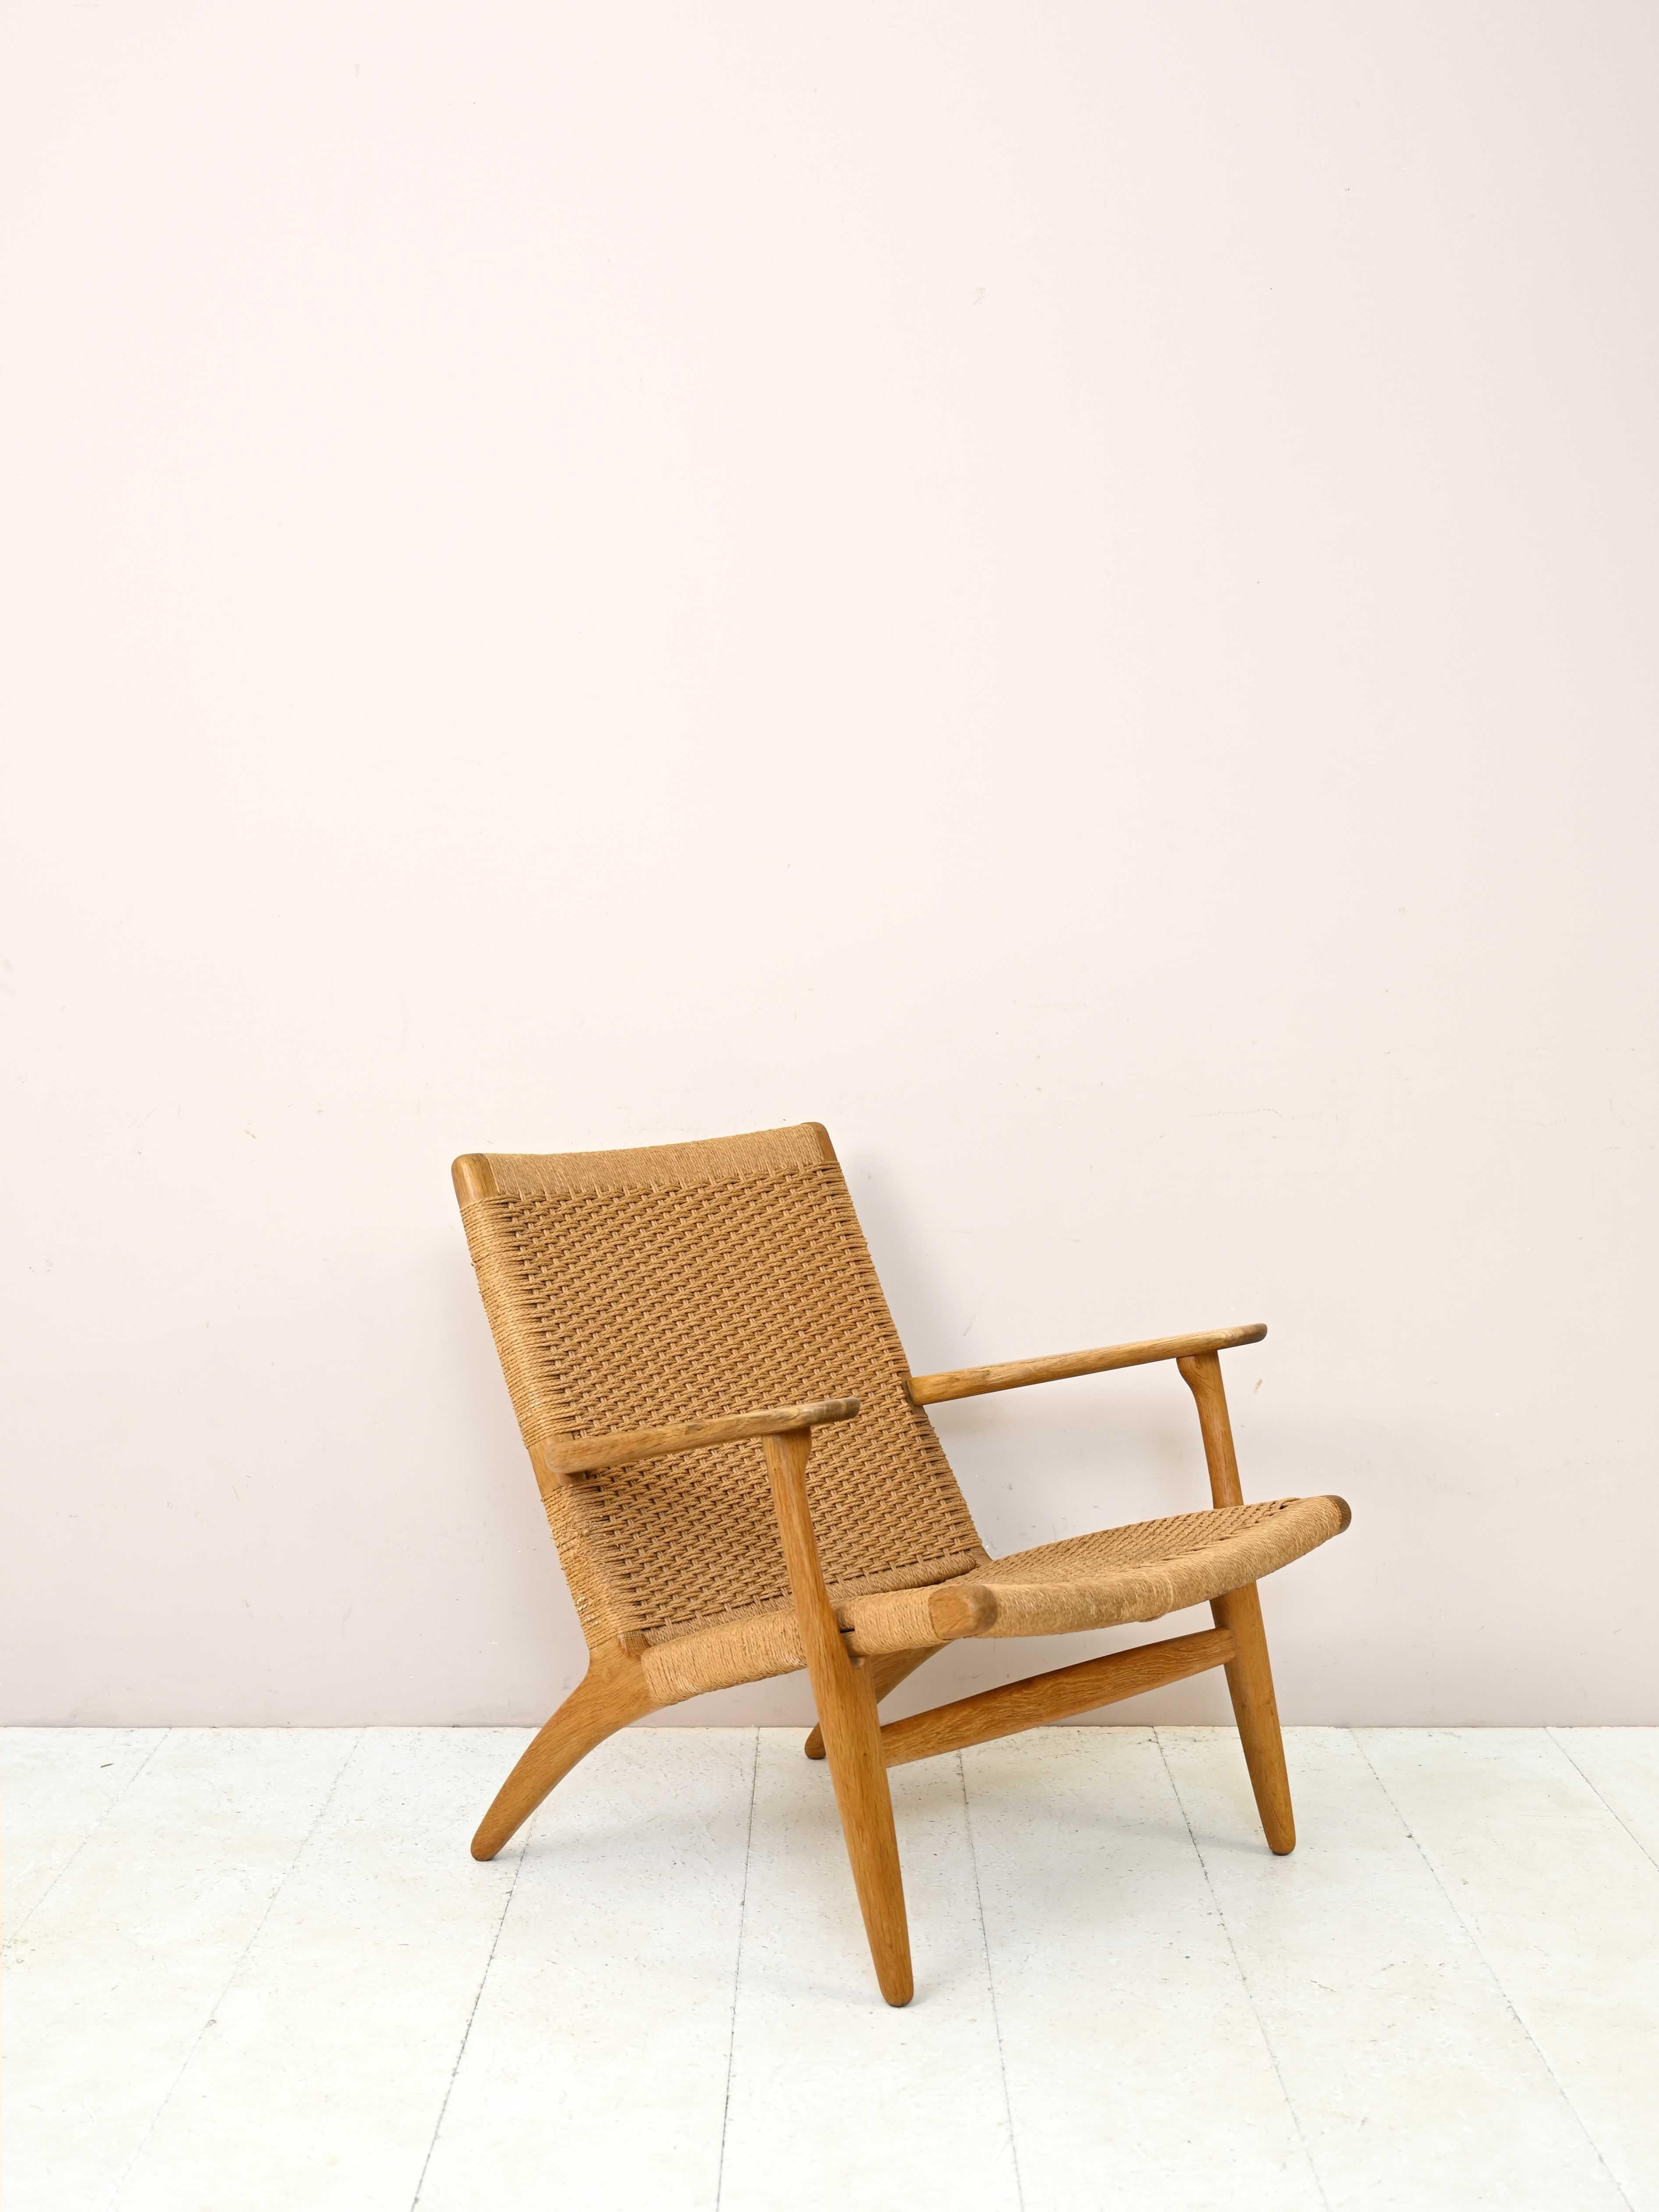 Fauteuil CH25 de Hans J Wegner pour Carl Hansen & Son, Danemark.

Le fauteuil a été conçu dans les années 1950 par Wegner et est devenu depuis une icône incontestable du design scandinave.
Son originalité réside dans l'utilisation de la Corde en